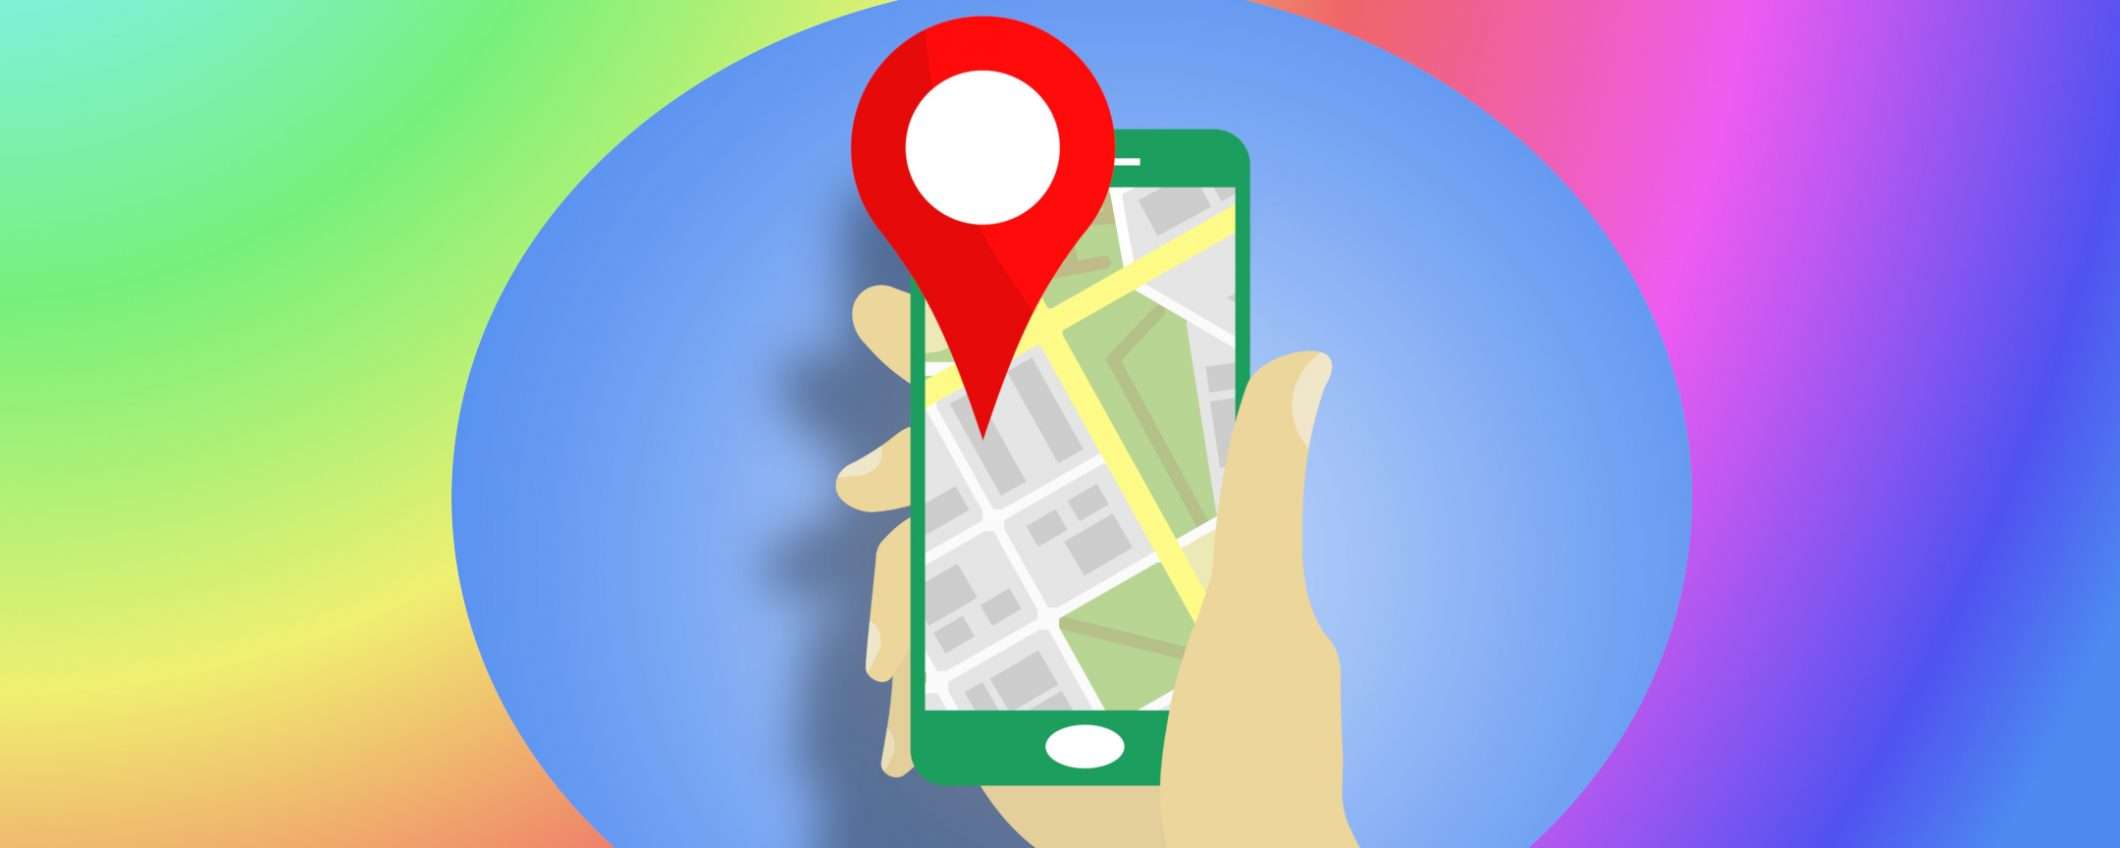 Google Maps ci spia: le migliori alternative